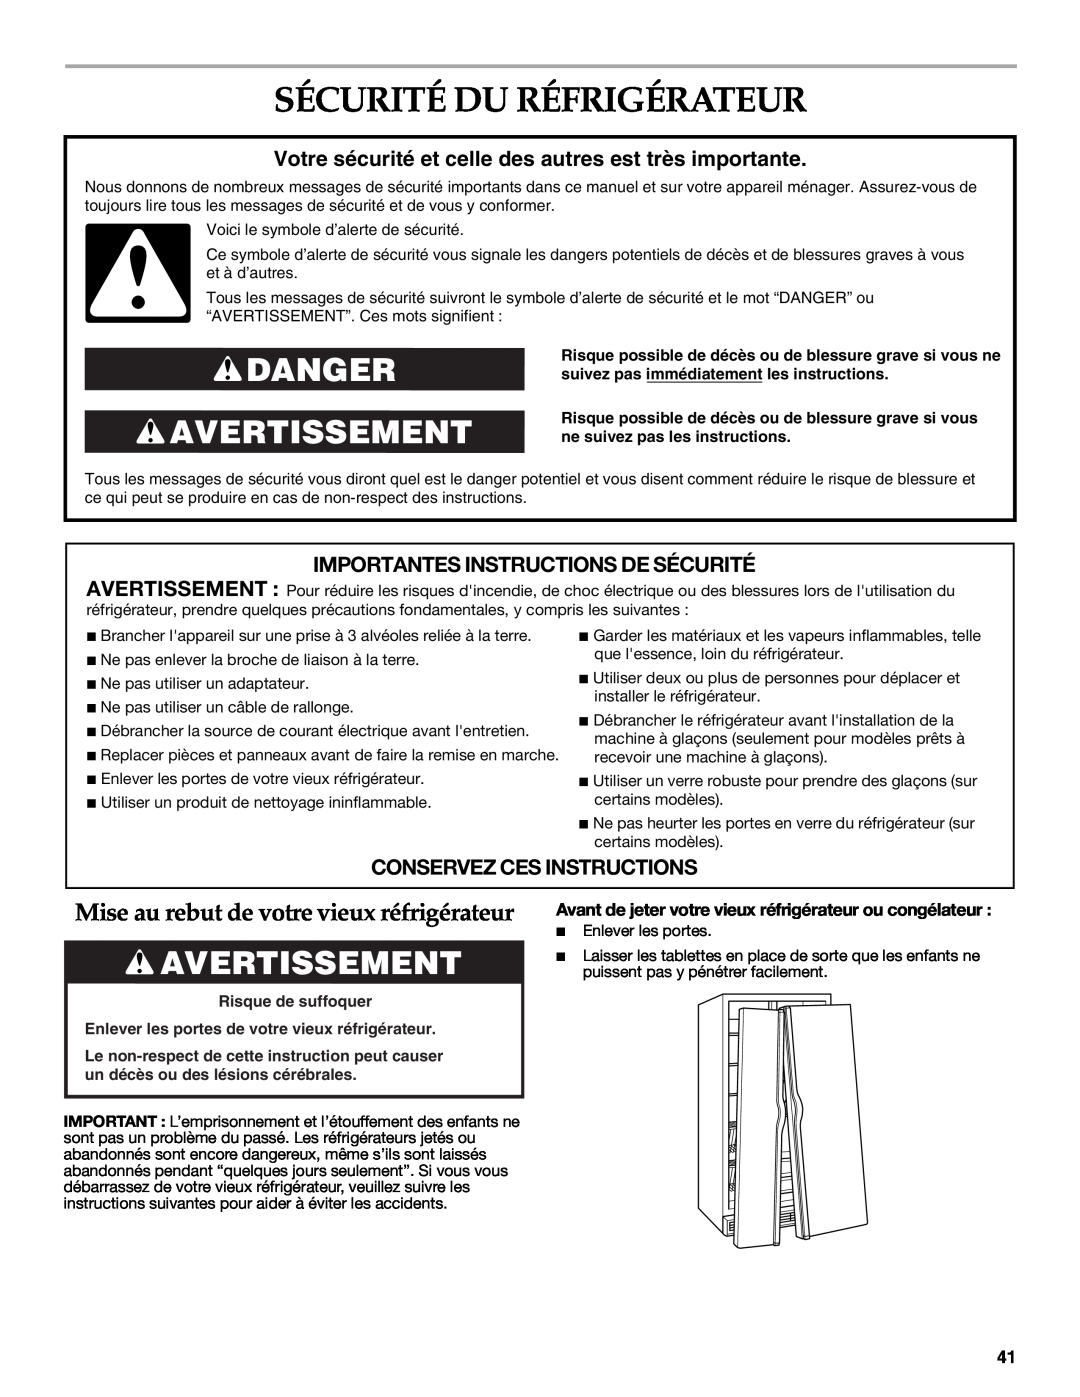 KitchenAid W10303989A manual Sécurité Du Réfrigérateur, Danger Avertissement, Mise au rebut de votre vieux réfrigérateur 